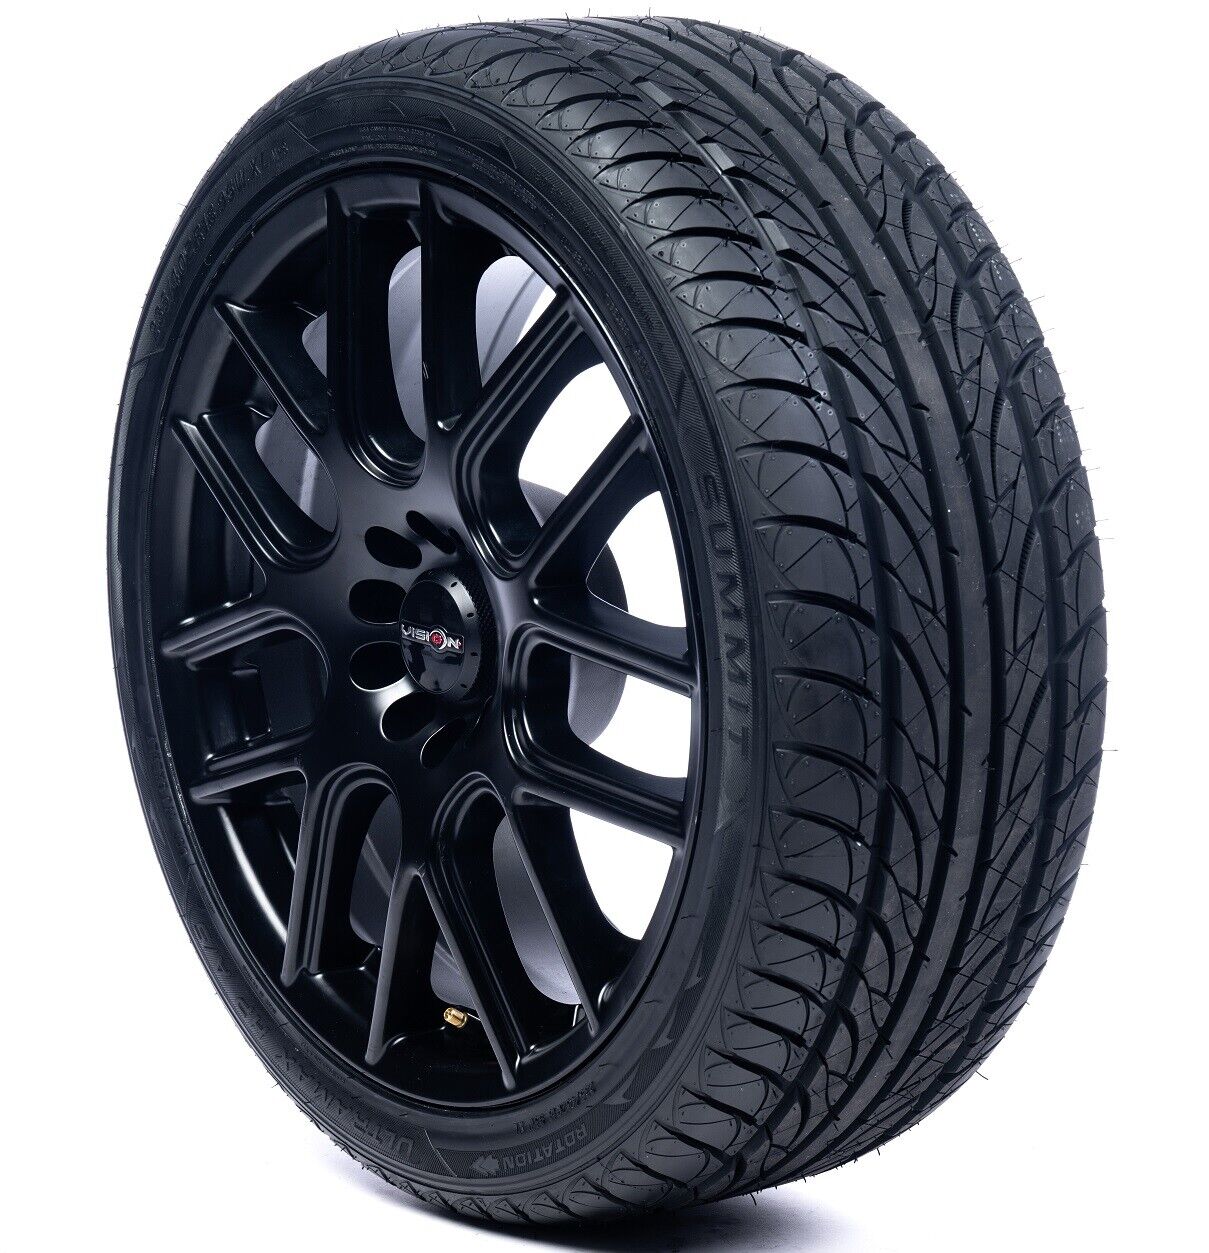 2 New Summit UltramaX HP All-Season Tires - 225/45R18 95W